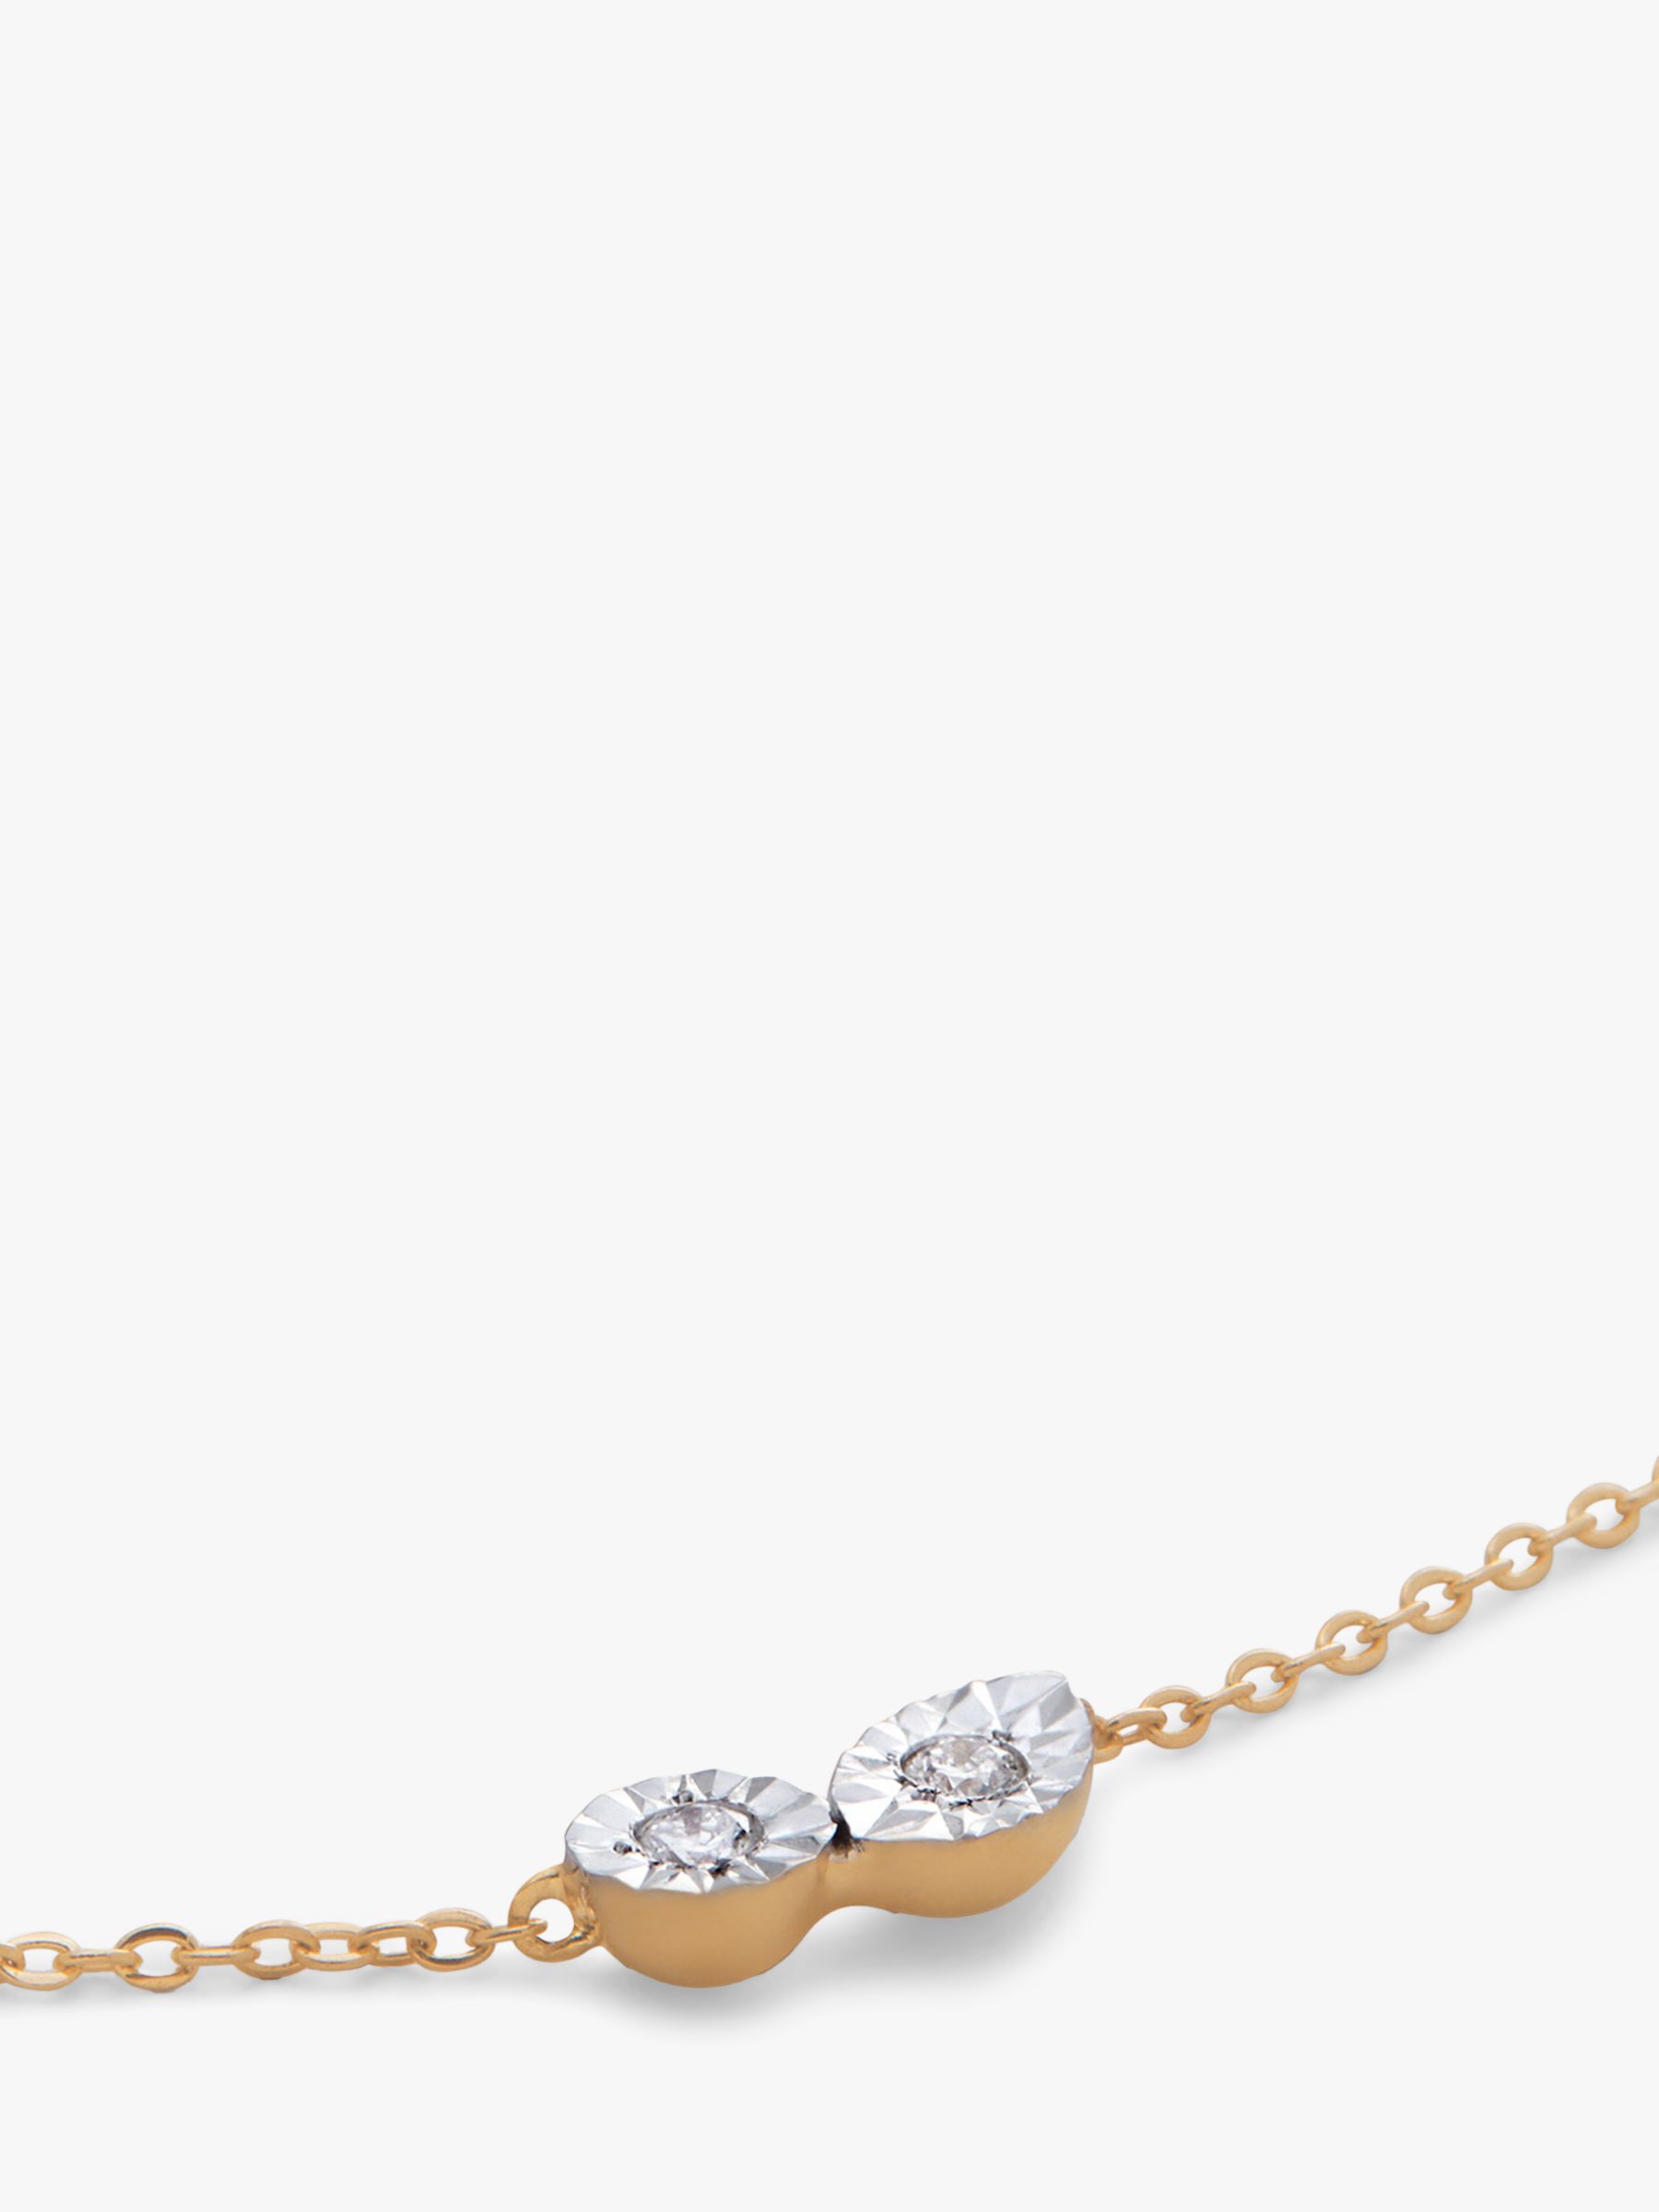 Monica Vinader Diamond Chain Bracelet, Gold, M